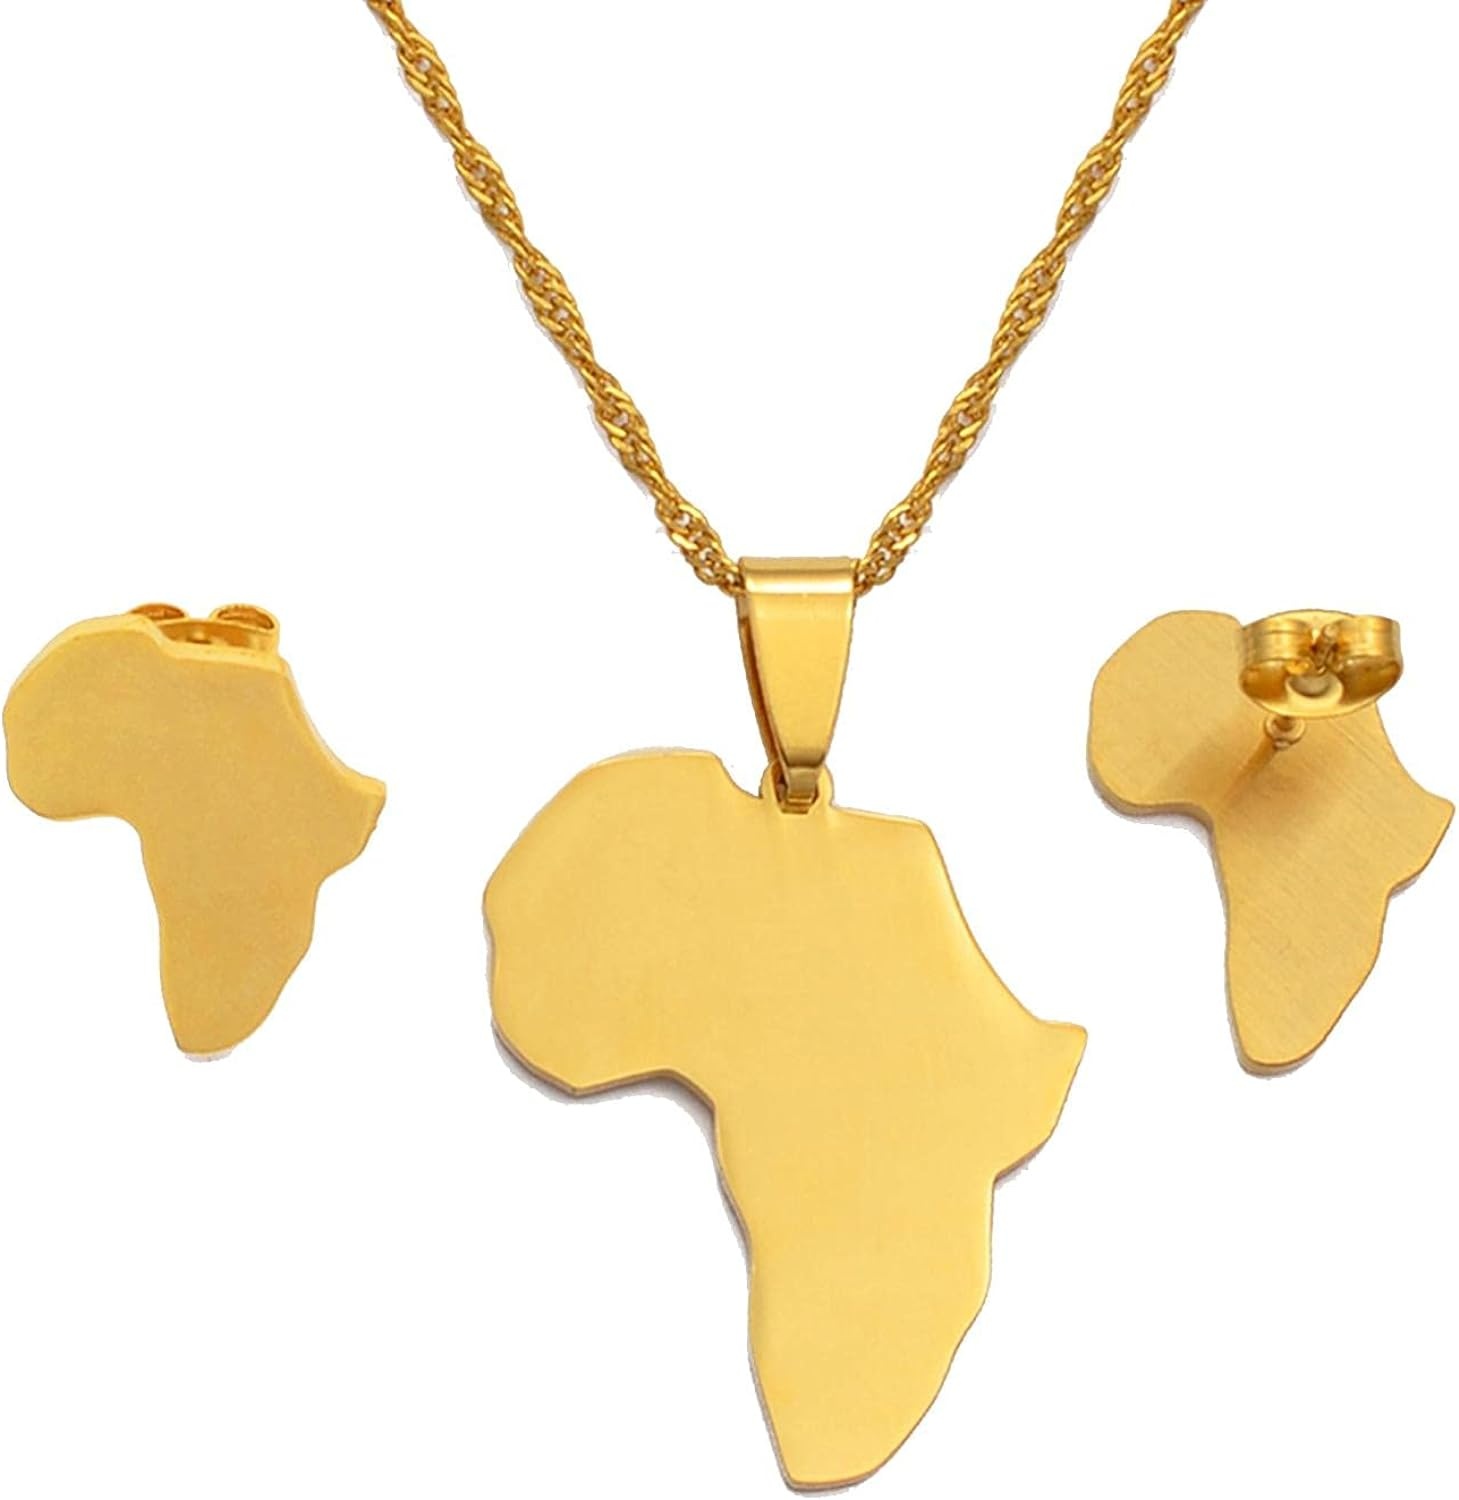 Omolola 18K Vergulde Roestvrij staal Afrika kaart sieradenset, goudkleurig